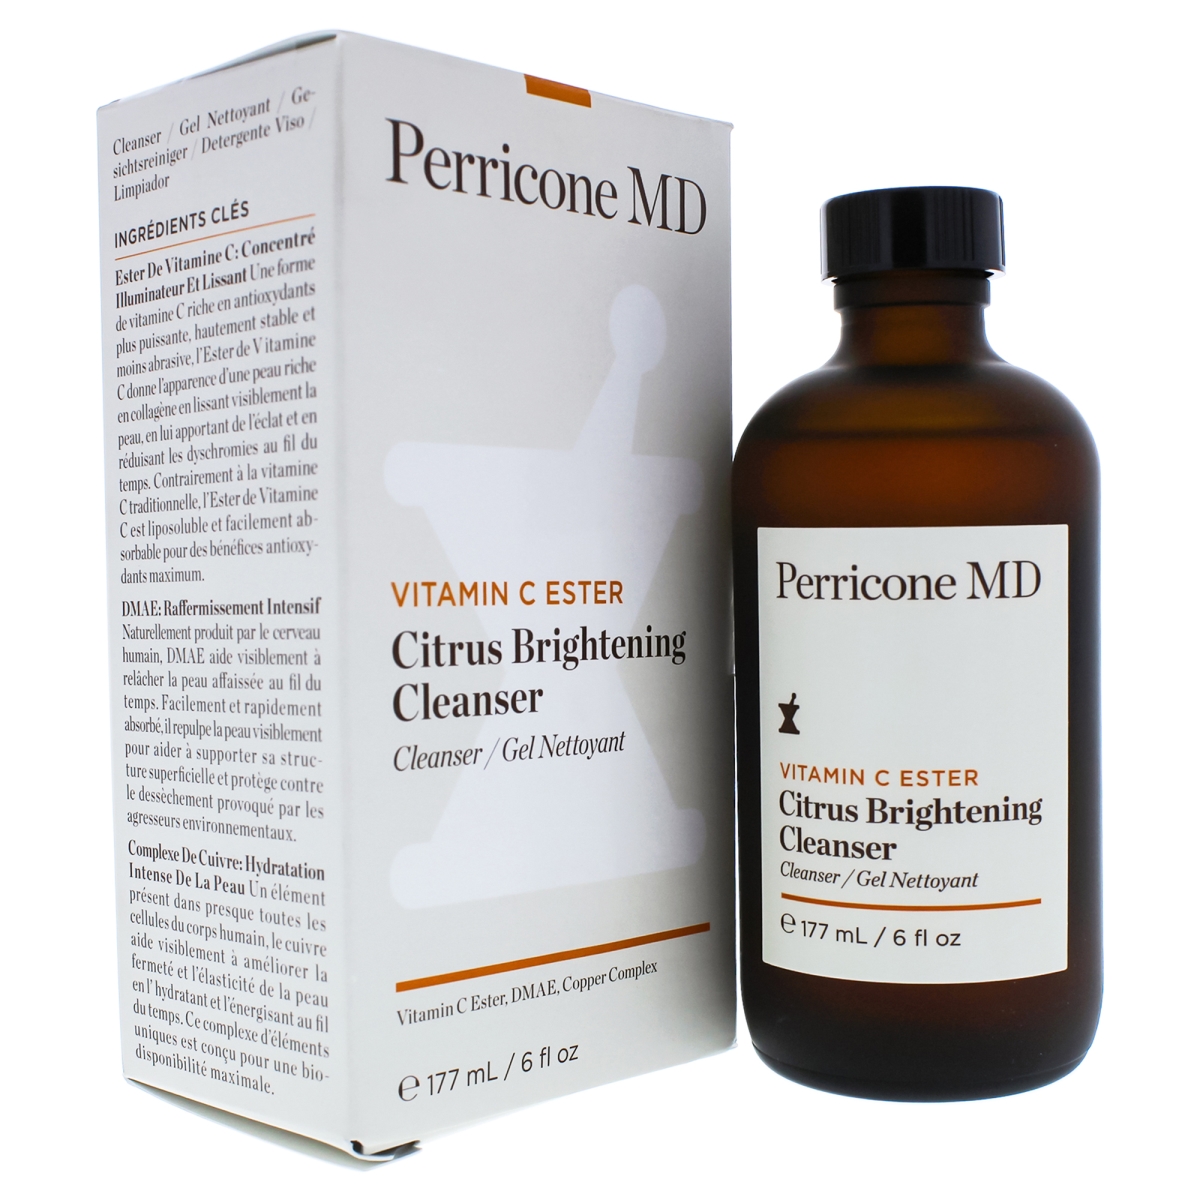 I0087931 Vitamin C Ester Citrus Brightening Cleanser for Unisex - 6 oz -  Perricone Md